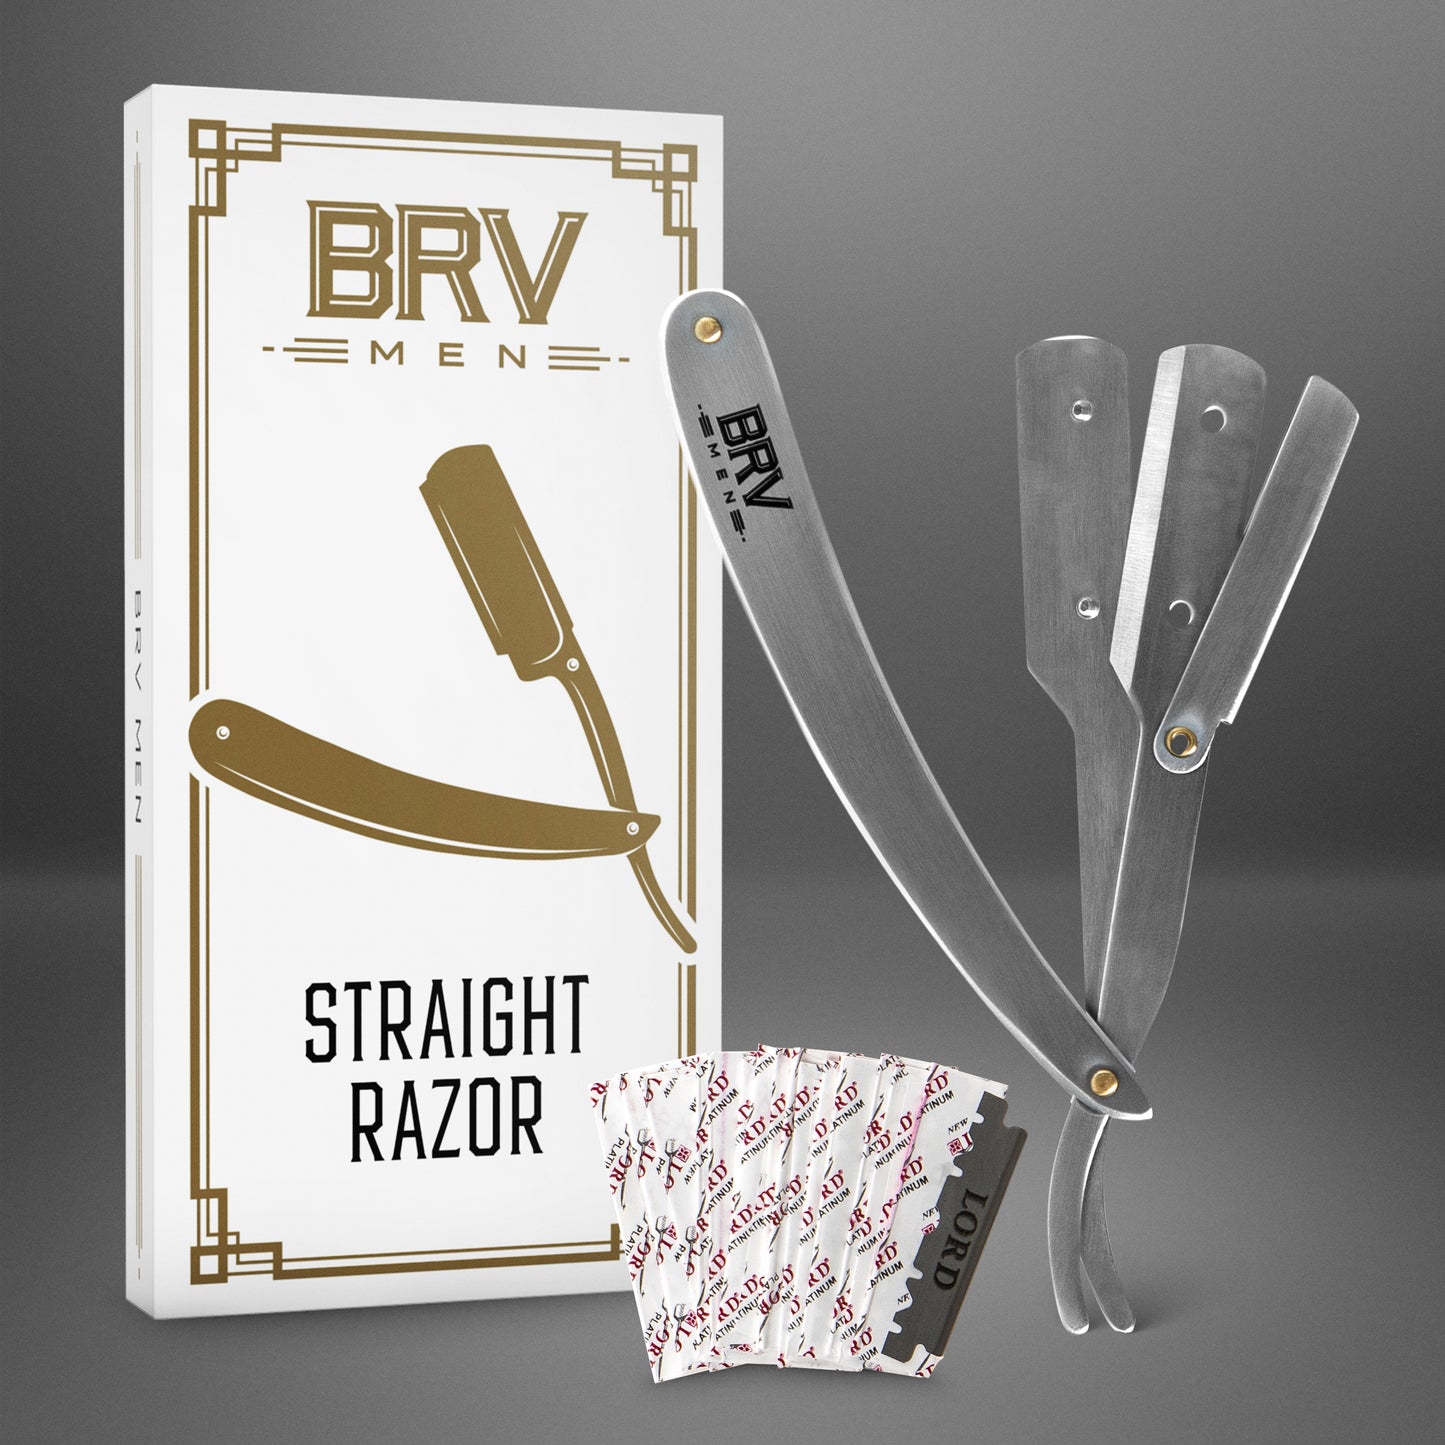 
                  
                    BRV MEN Professional Straight Edge Barber Razor - 100 Lord Platinum Single Edge Razor Blades - 100% Stainless Steel Shavette - Mens Shaving Knife - Silver
                  
                